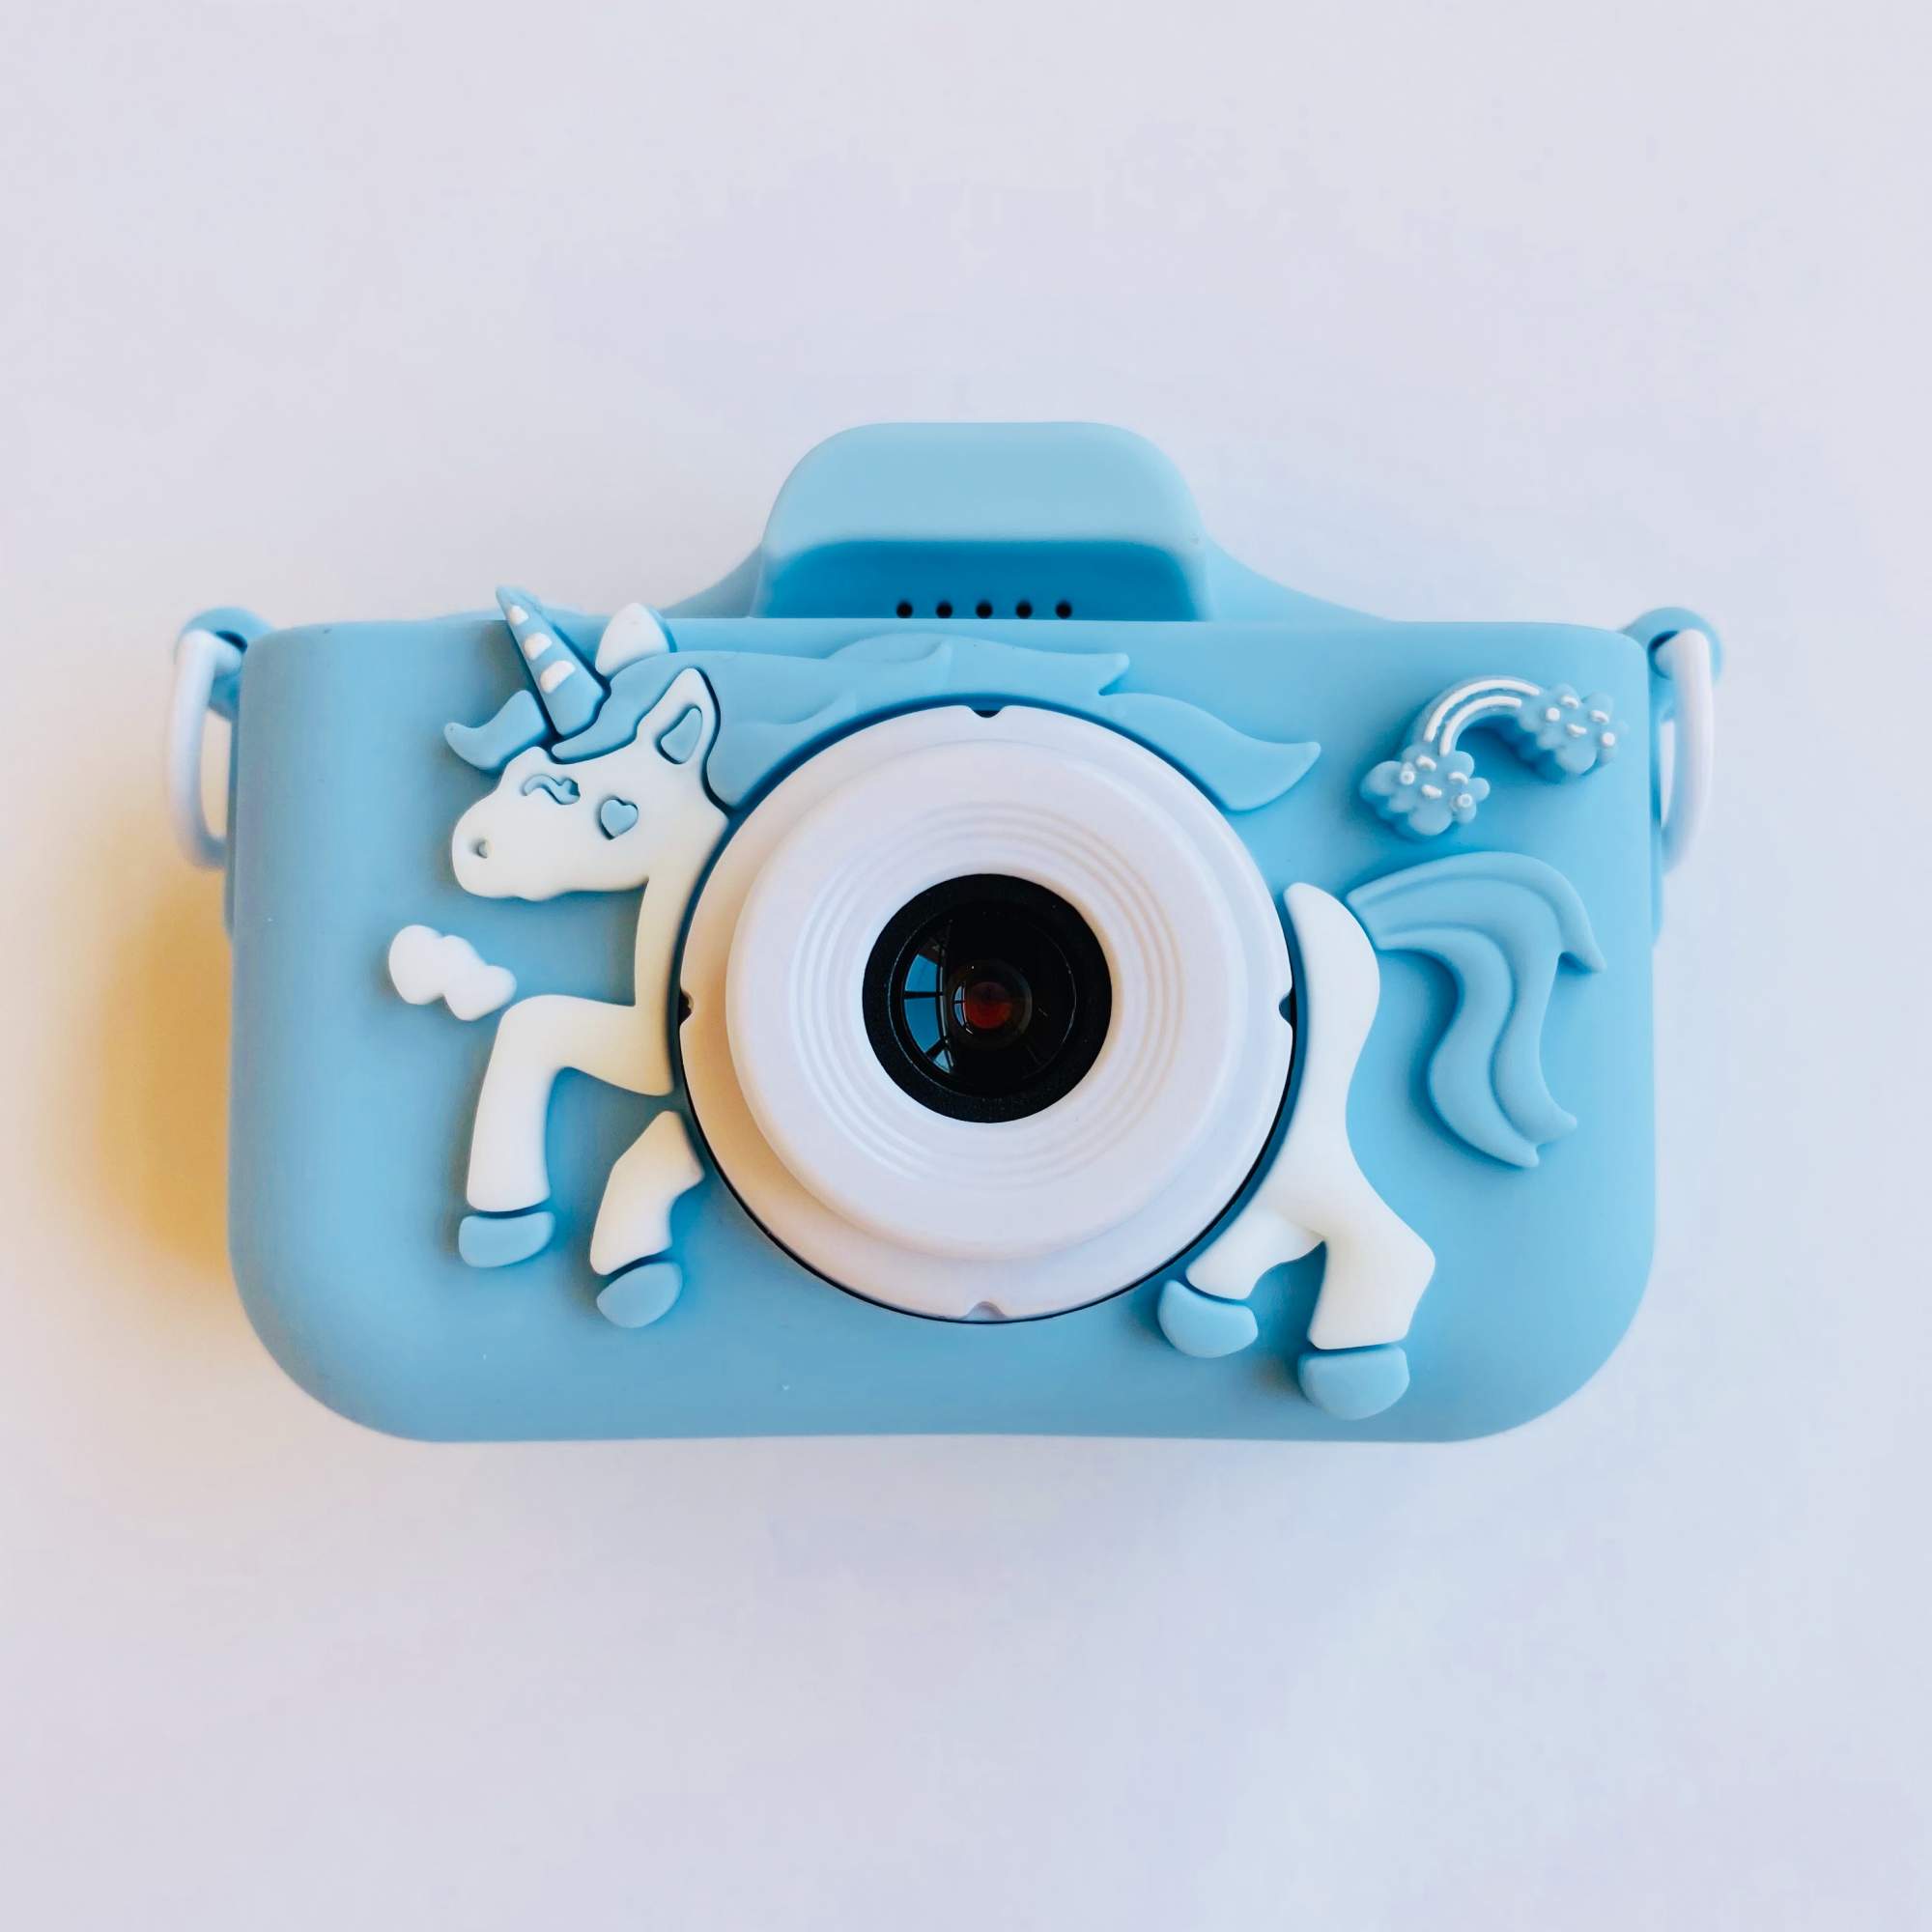 Детский цифровой фотоаппарат 48Mpx с играми и селфи камерой для мальчика Единорог голубой